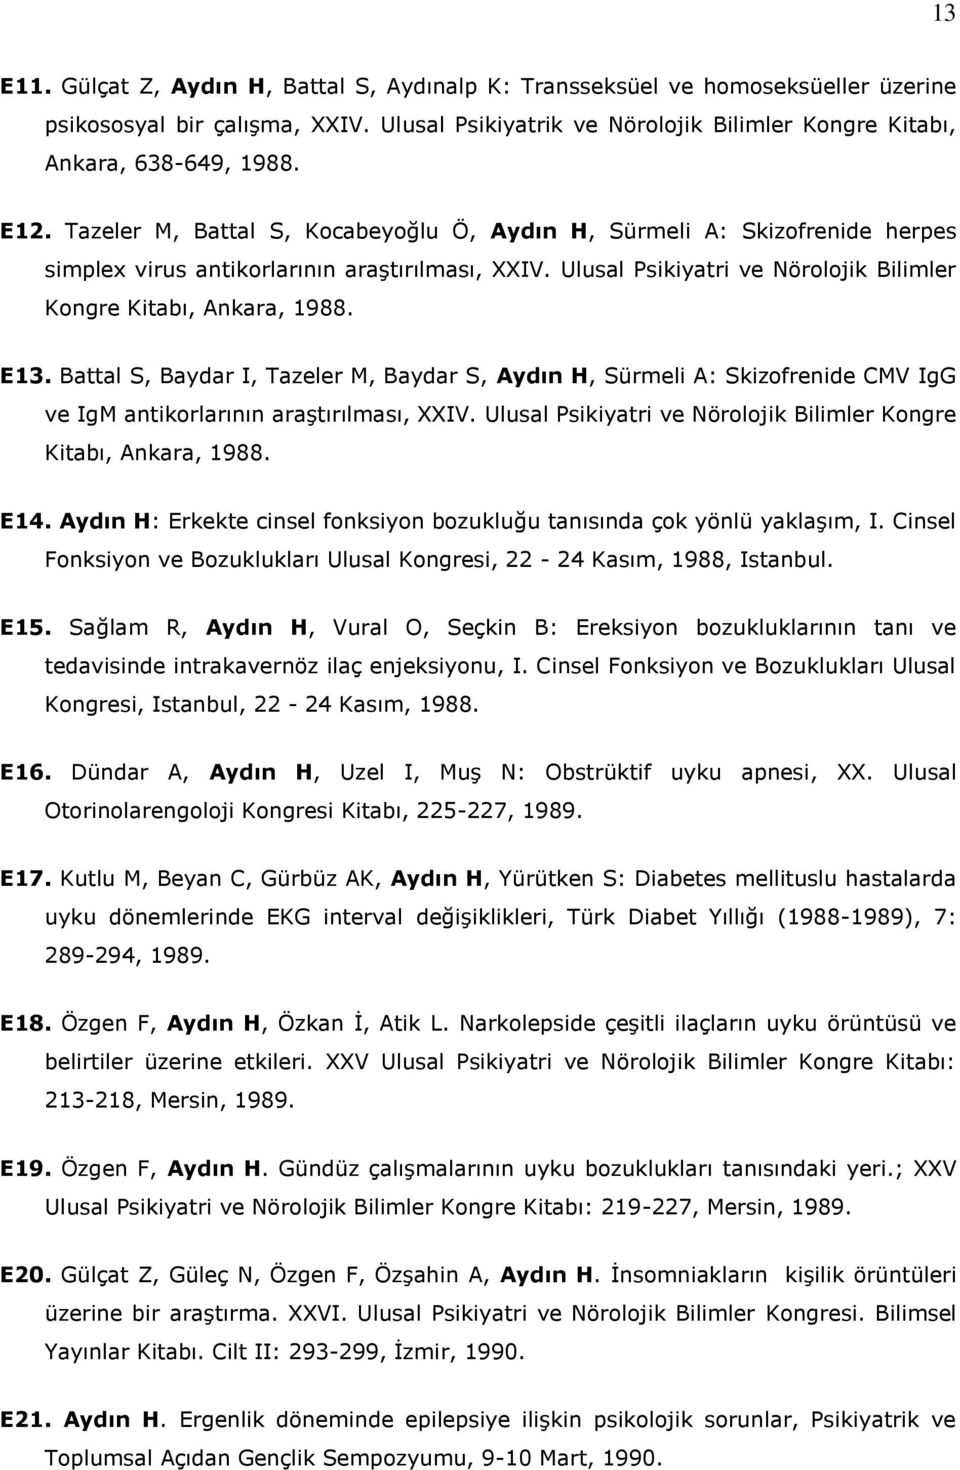 E13. Battal S, Baydar I, Tazeler M, Baydar S, Aydın H, Sürmeli A: Skizofrenide CMV IgG ve IgM antikorlarının araştırılması, XXIV. Ulusal Psikiyatri ve Nörolojik Bilimler Kongre Kitabı, Ankara, 1988.